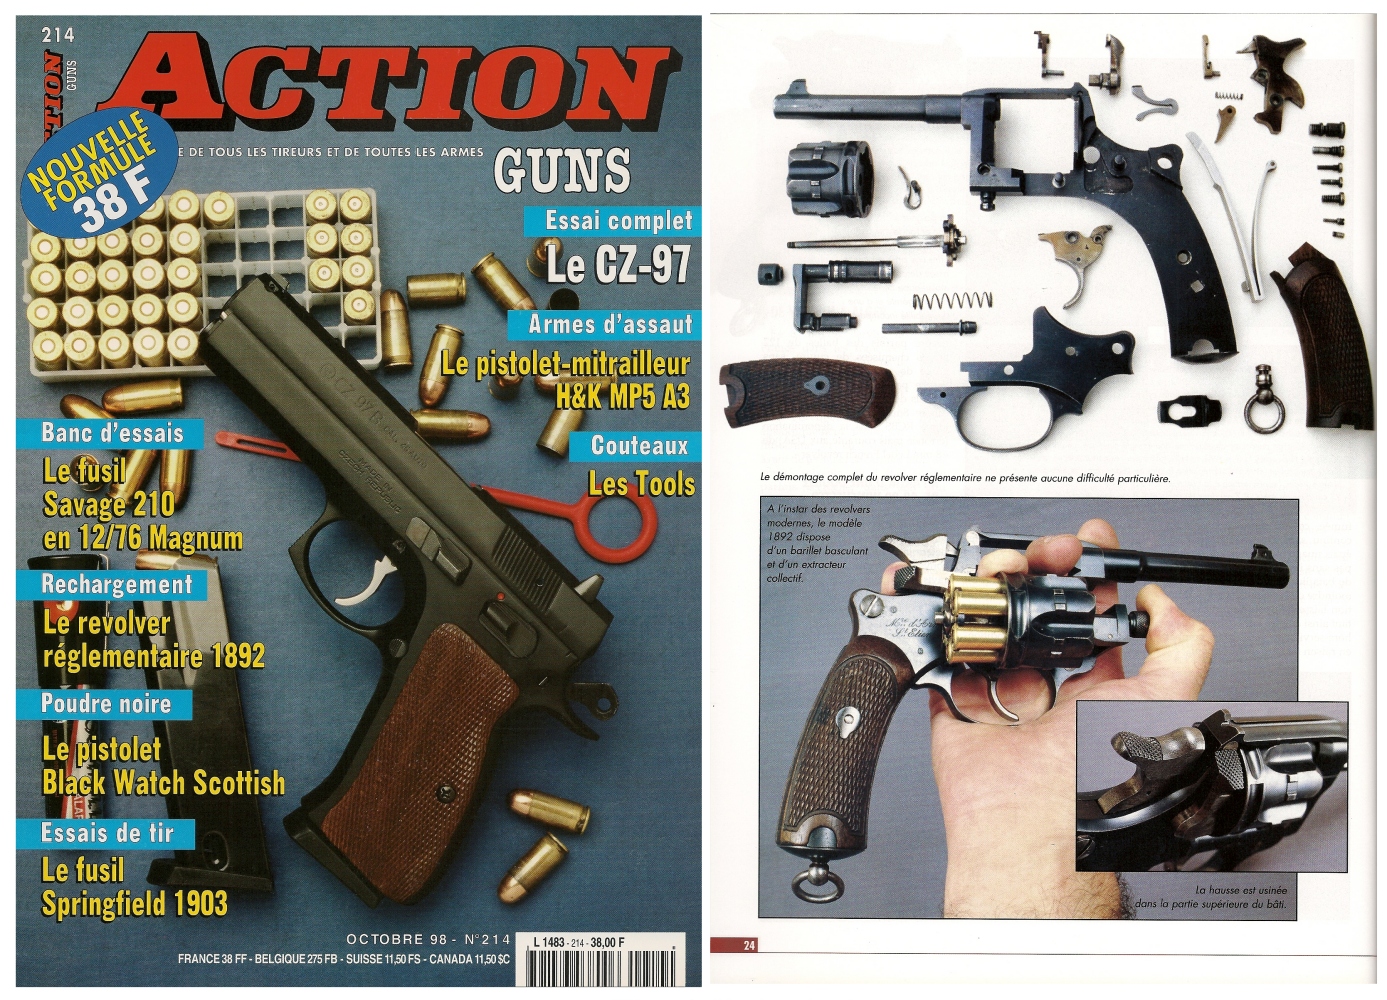 Le banc d’essai du revolver St Etienne modèle 1892 a été publié sur 5 pages dans le magazine Action Guns n°214 (octobre 1998)